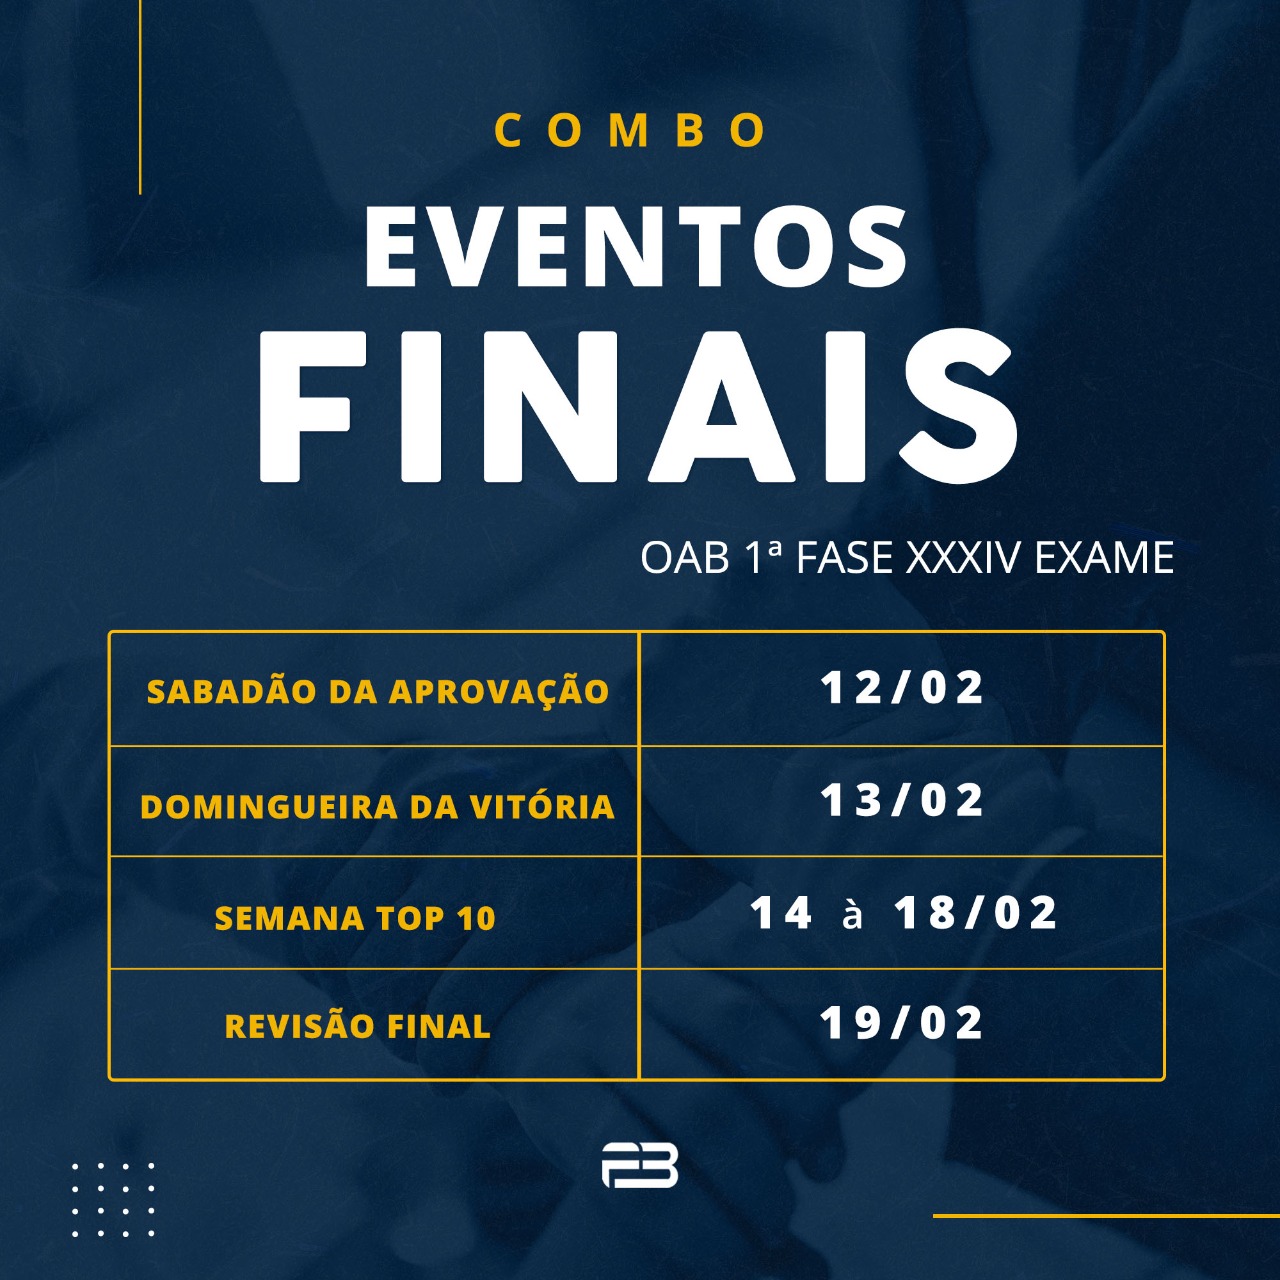 COMBO EVENTOS FINAIS - OAB 1º FASE EXAME XXXIV